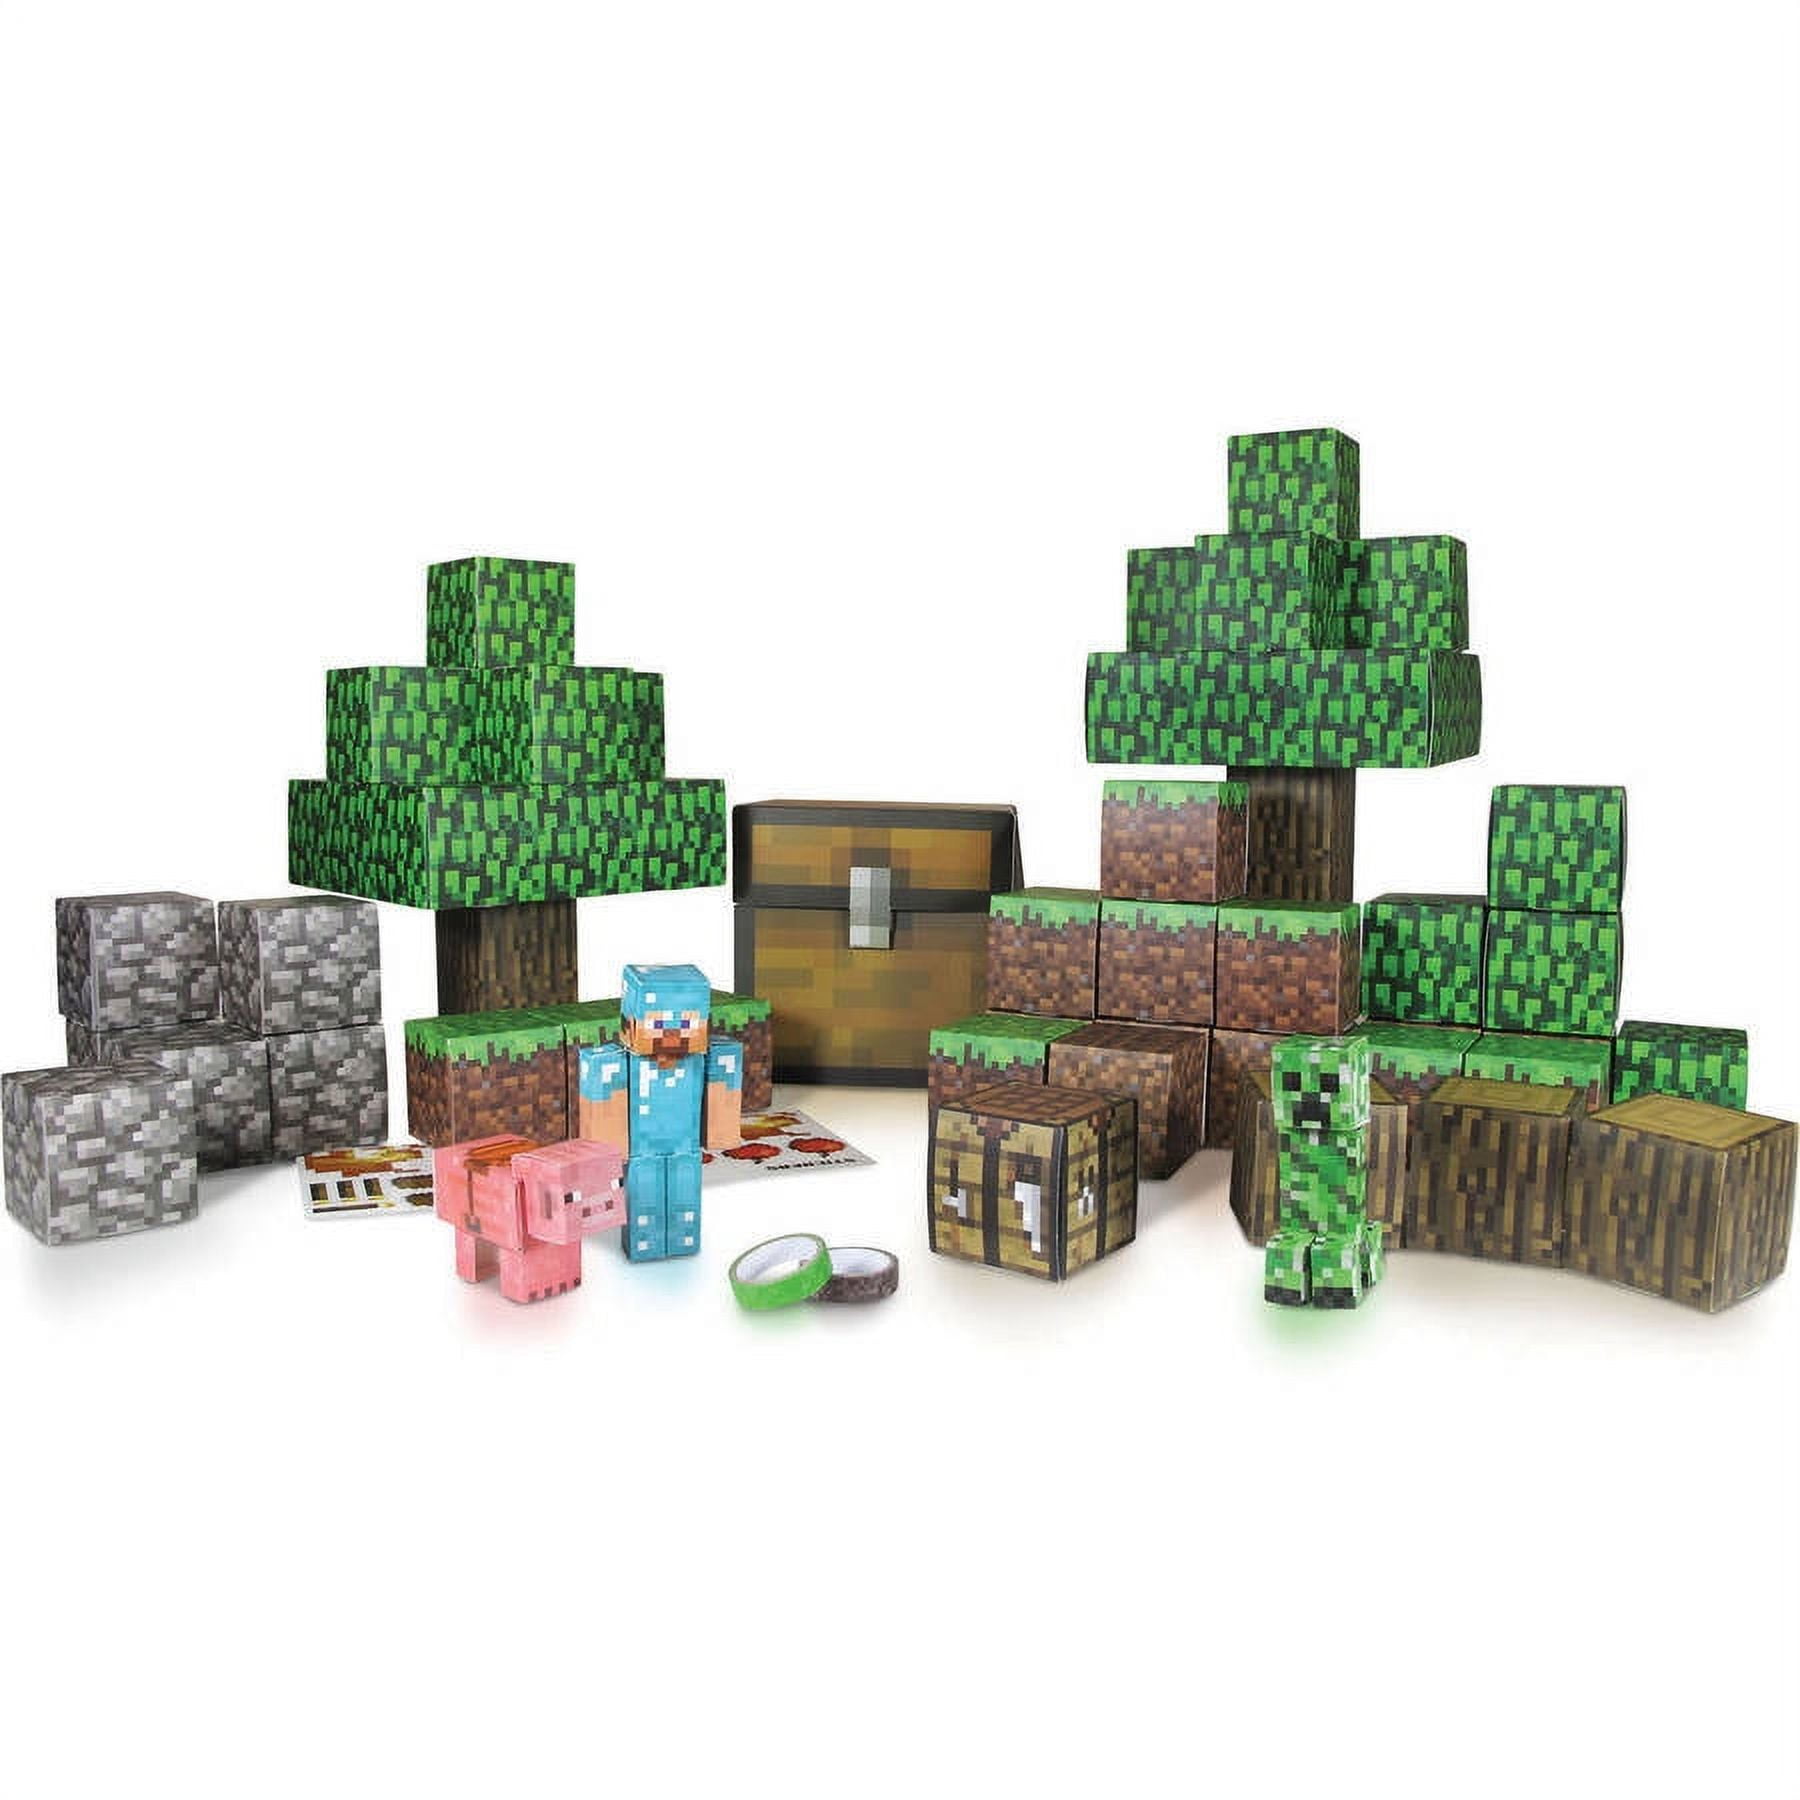 Minecraft, 3D PaperCraft #minecraft #3dminecraftmodel #lego  #minecraftbuilds #paper #papercraft #paperart #handmade #3d #3dcraft…